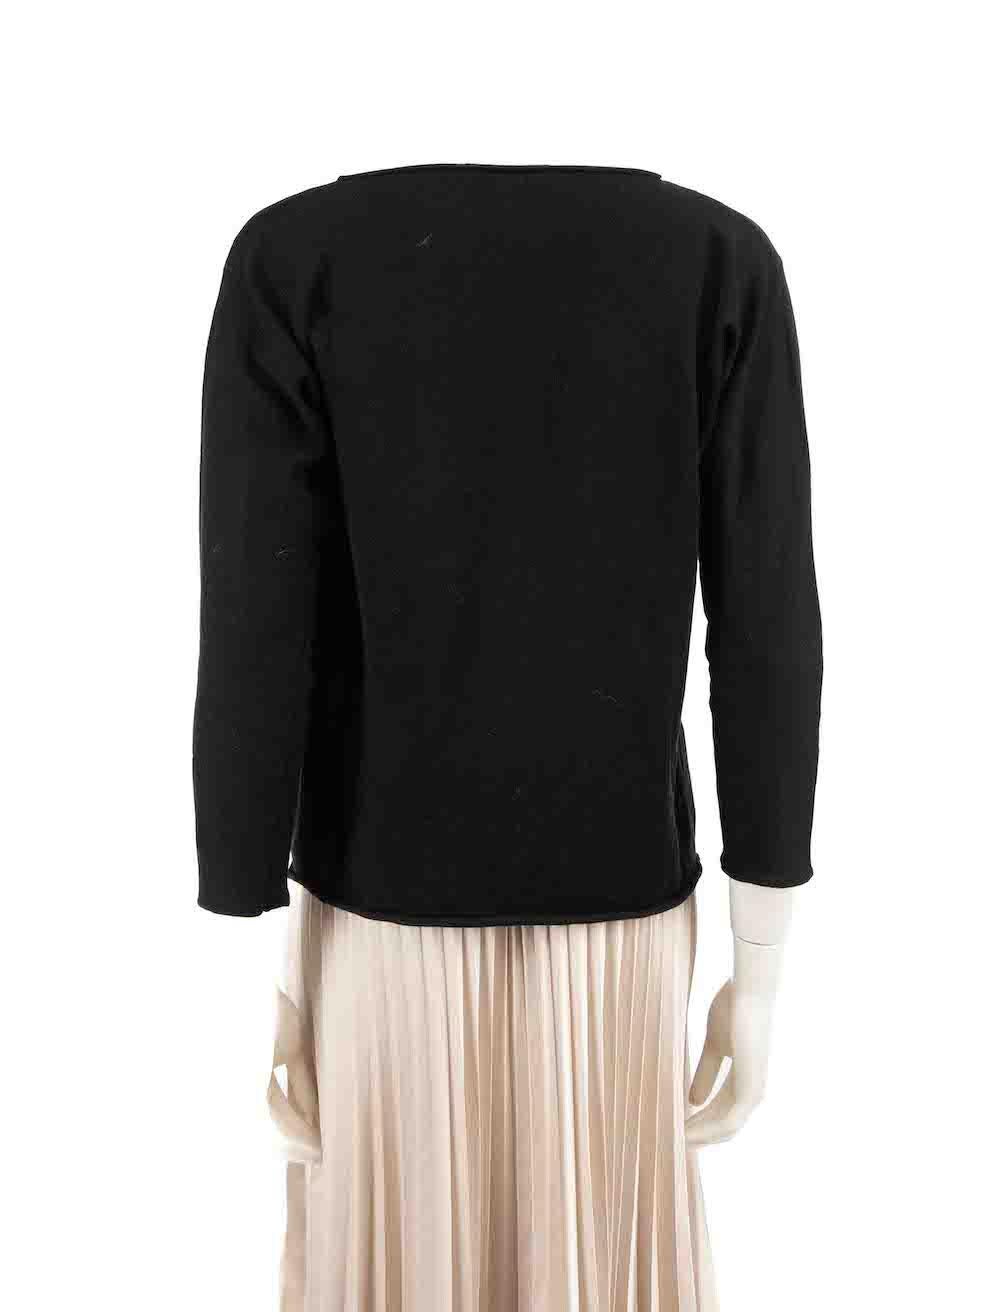 Fabiana Filippi Black Glitter Edge Knit Jumper Size M In Good Condition For Sale In London, GB